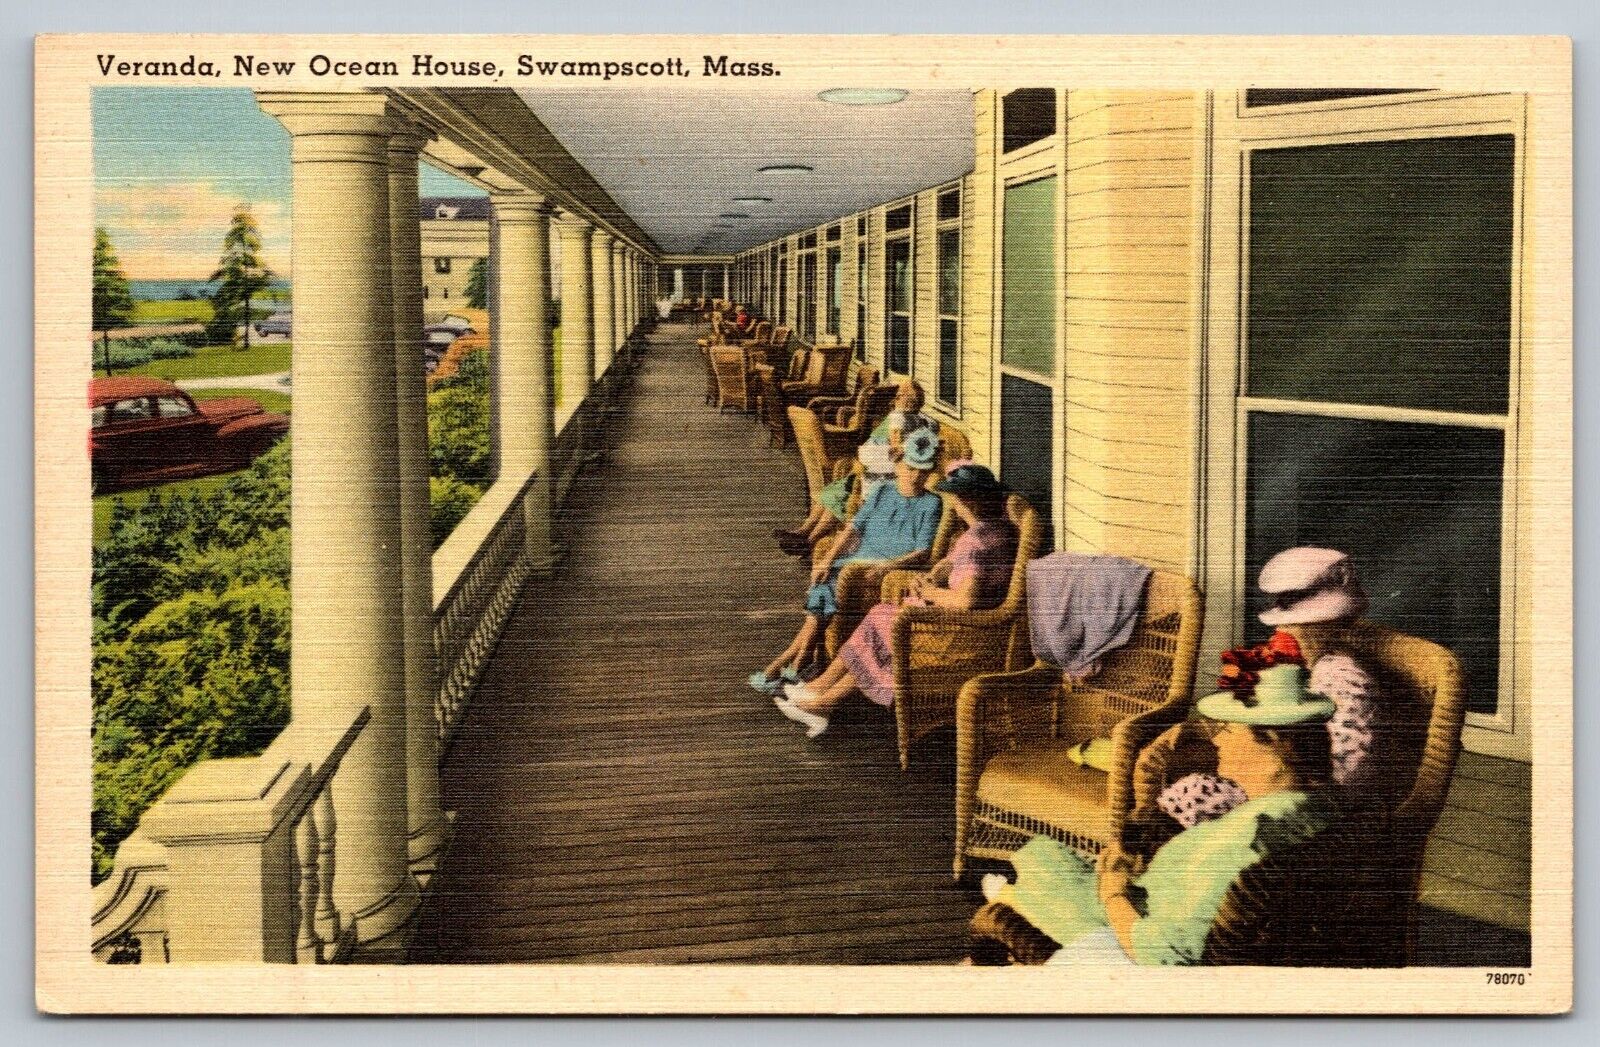 Vtg Swampscott Massachusetts MA New Ocean House Hotel Veranda Postcard